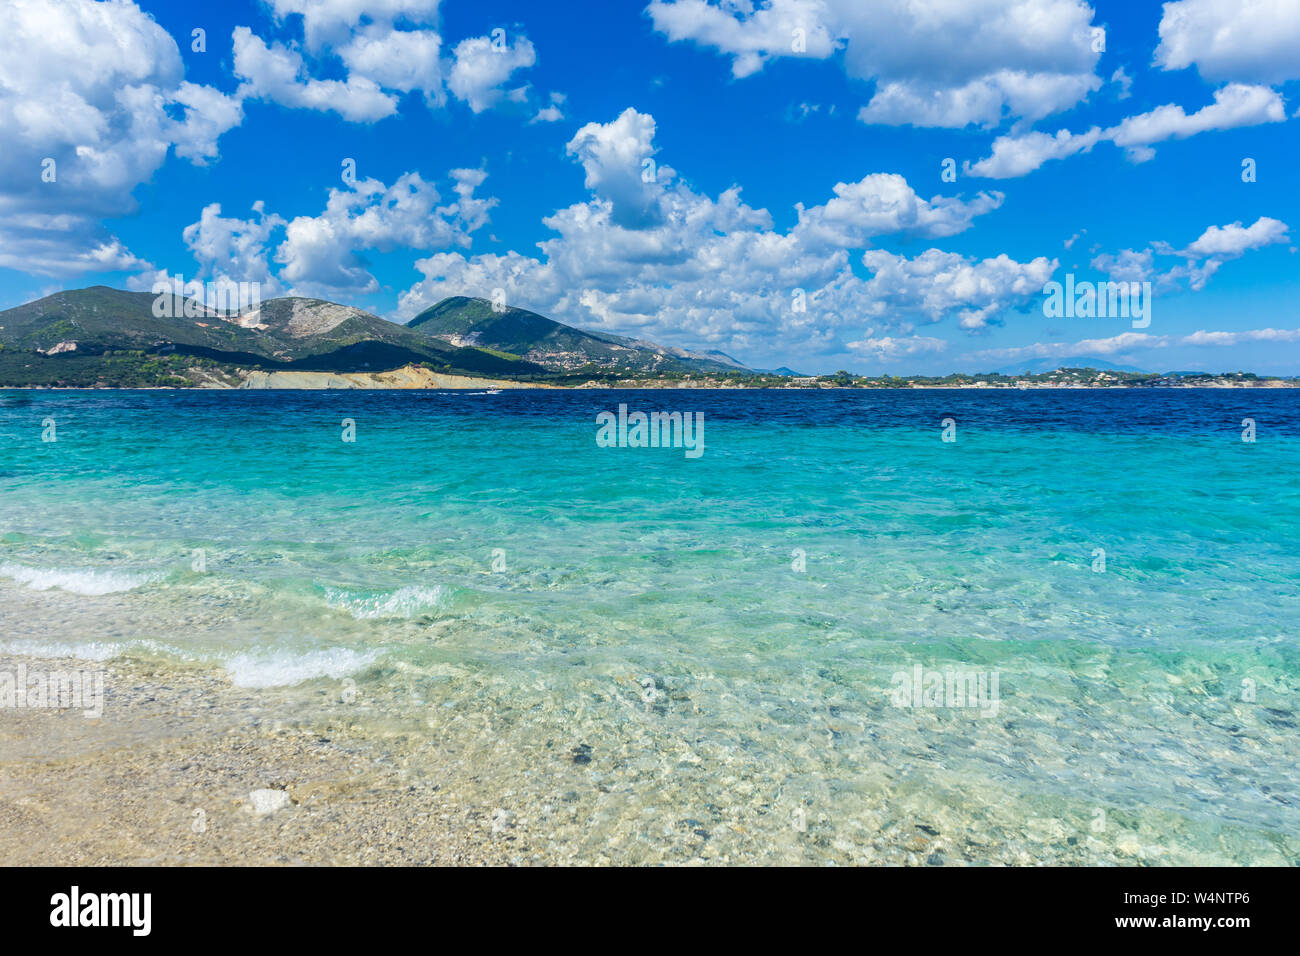 Griechenland, Zakynthos, weissen Sandstrand mit azurblauem Wasser und gebirgige Insel hinter Stockfoto